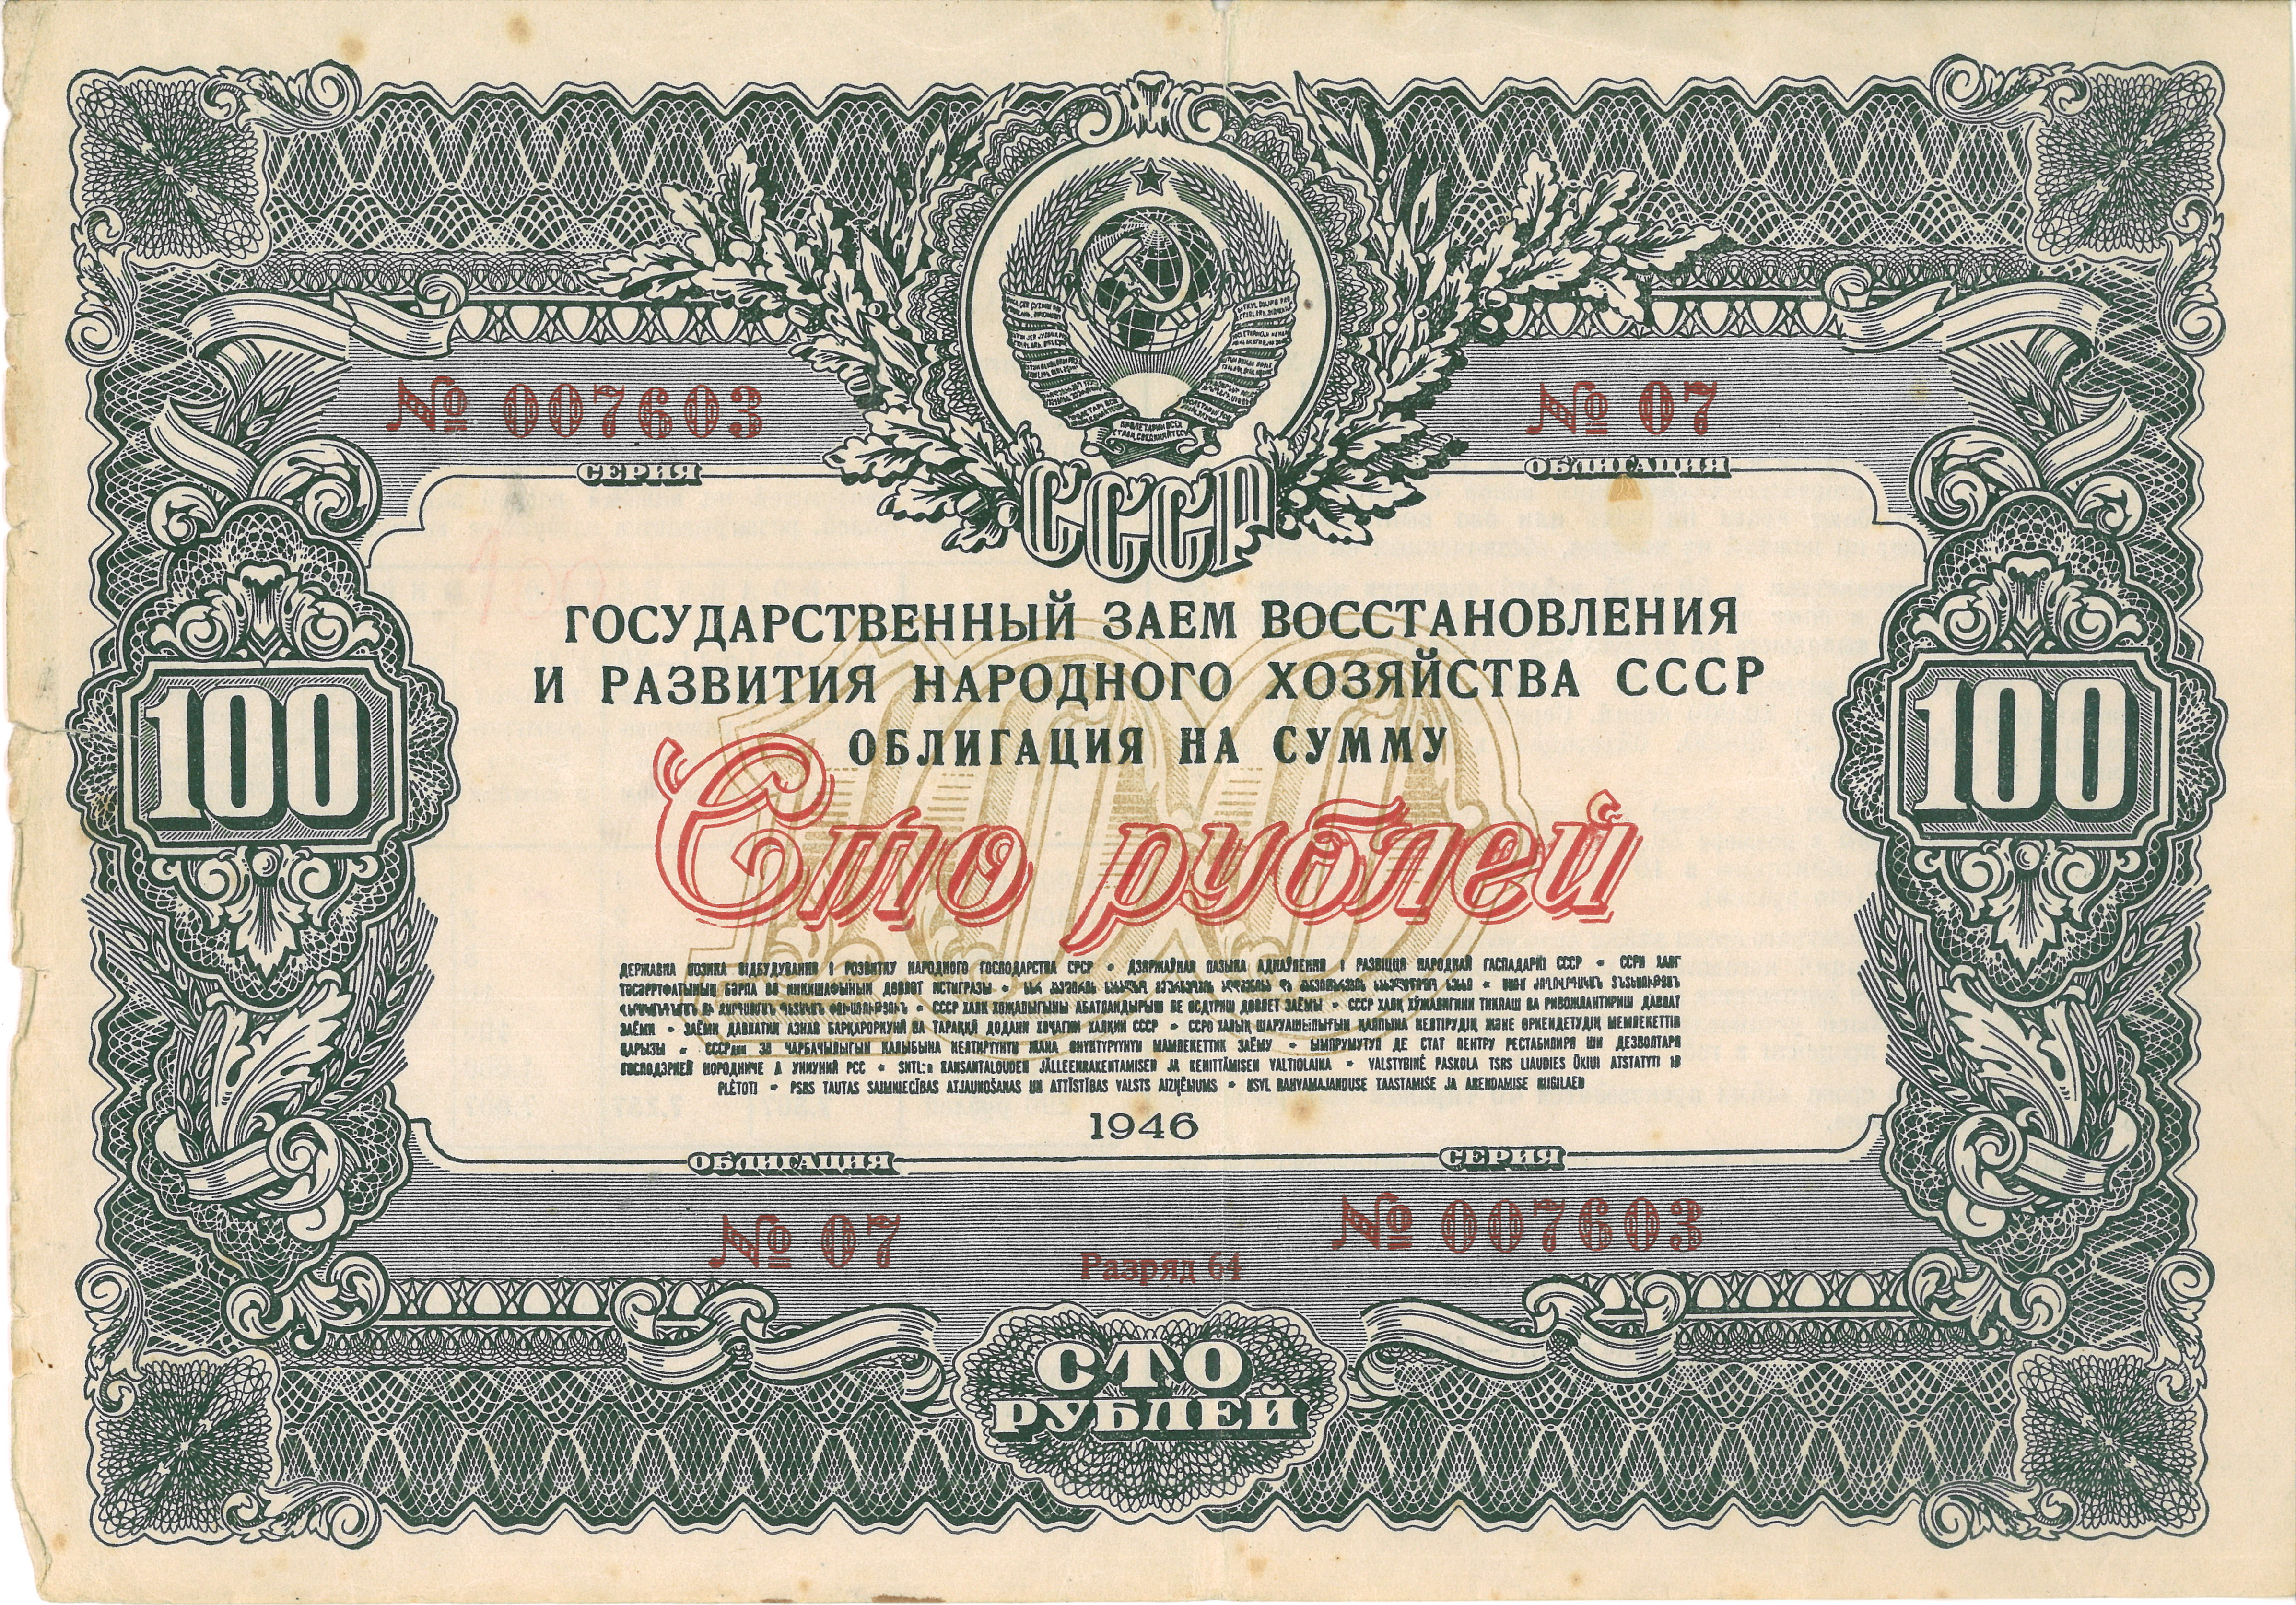 Облигация на сумму 100 рублей, 1946 год выпуска. Семейный архив составителя.